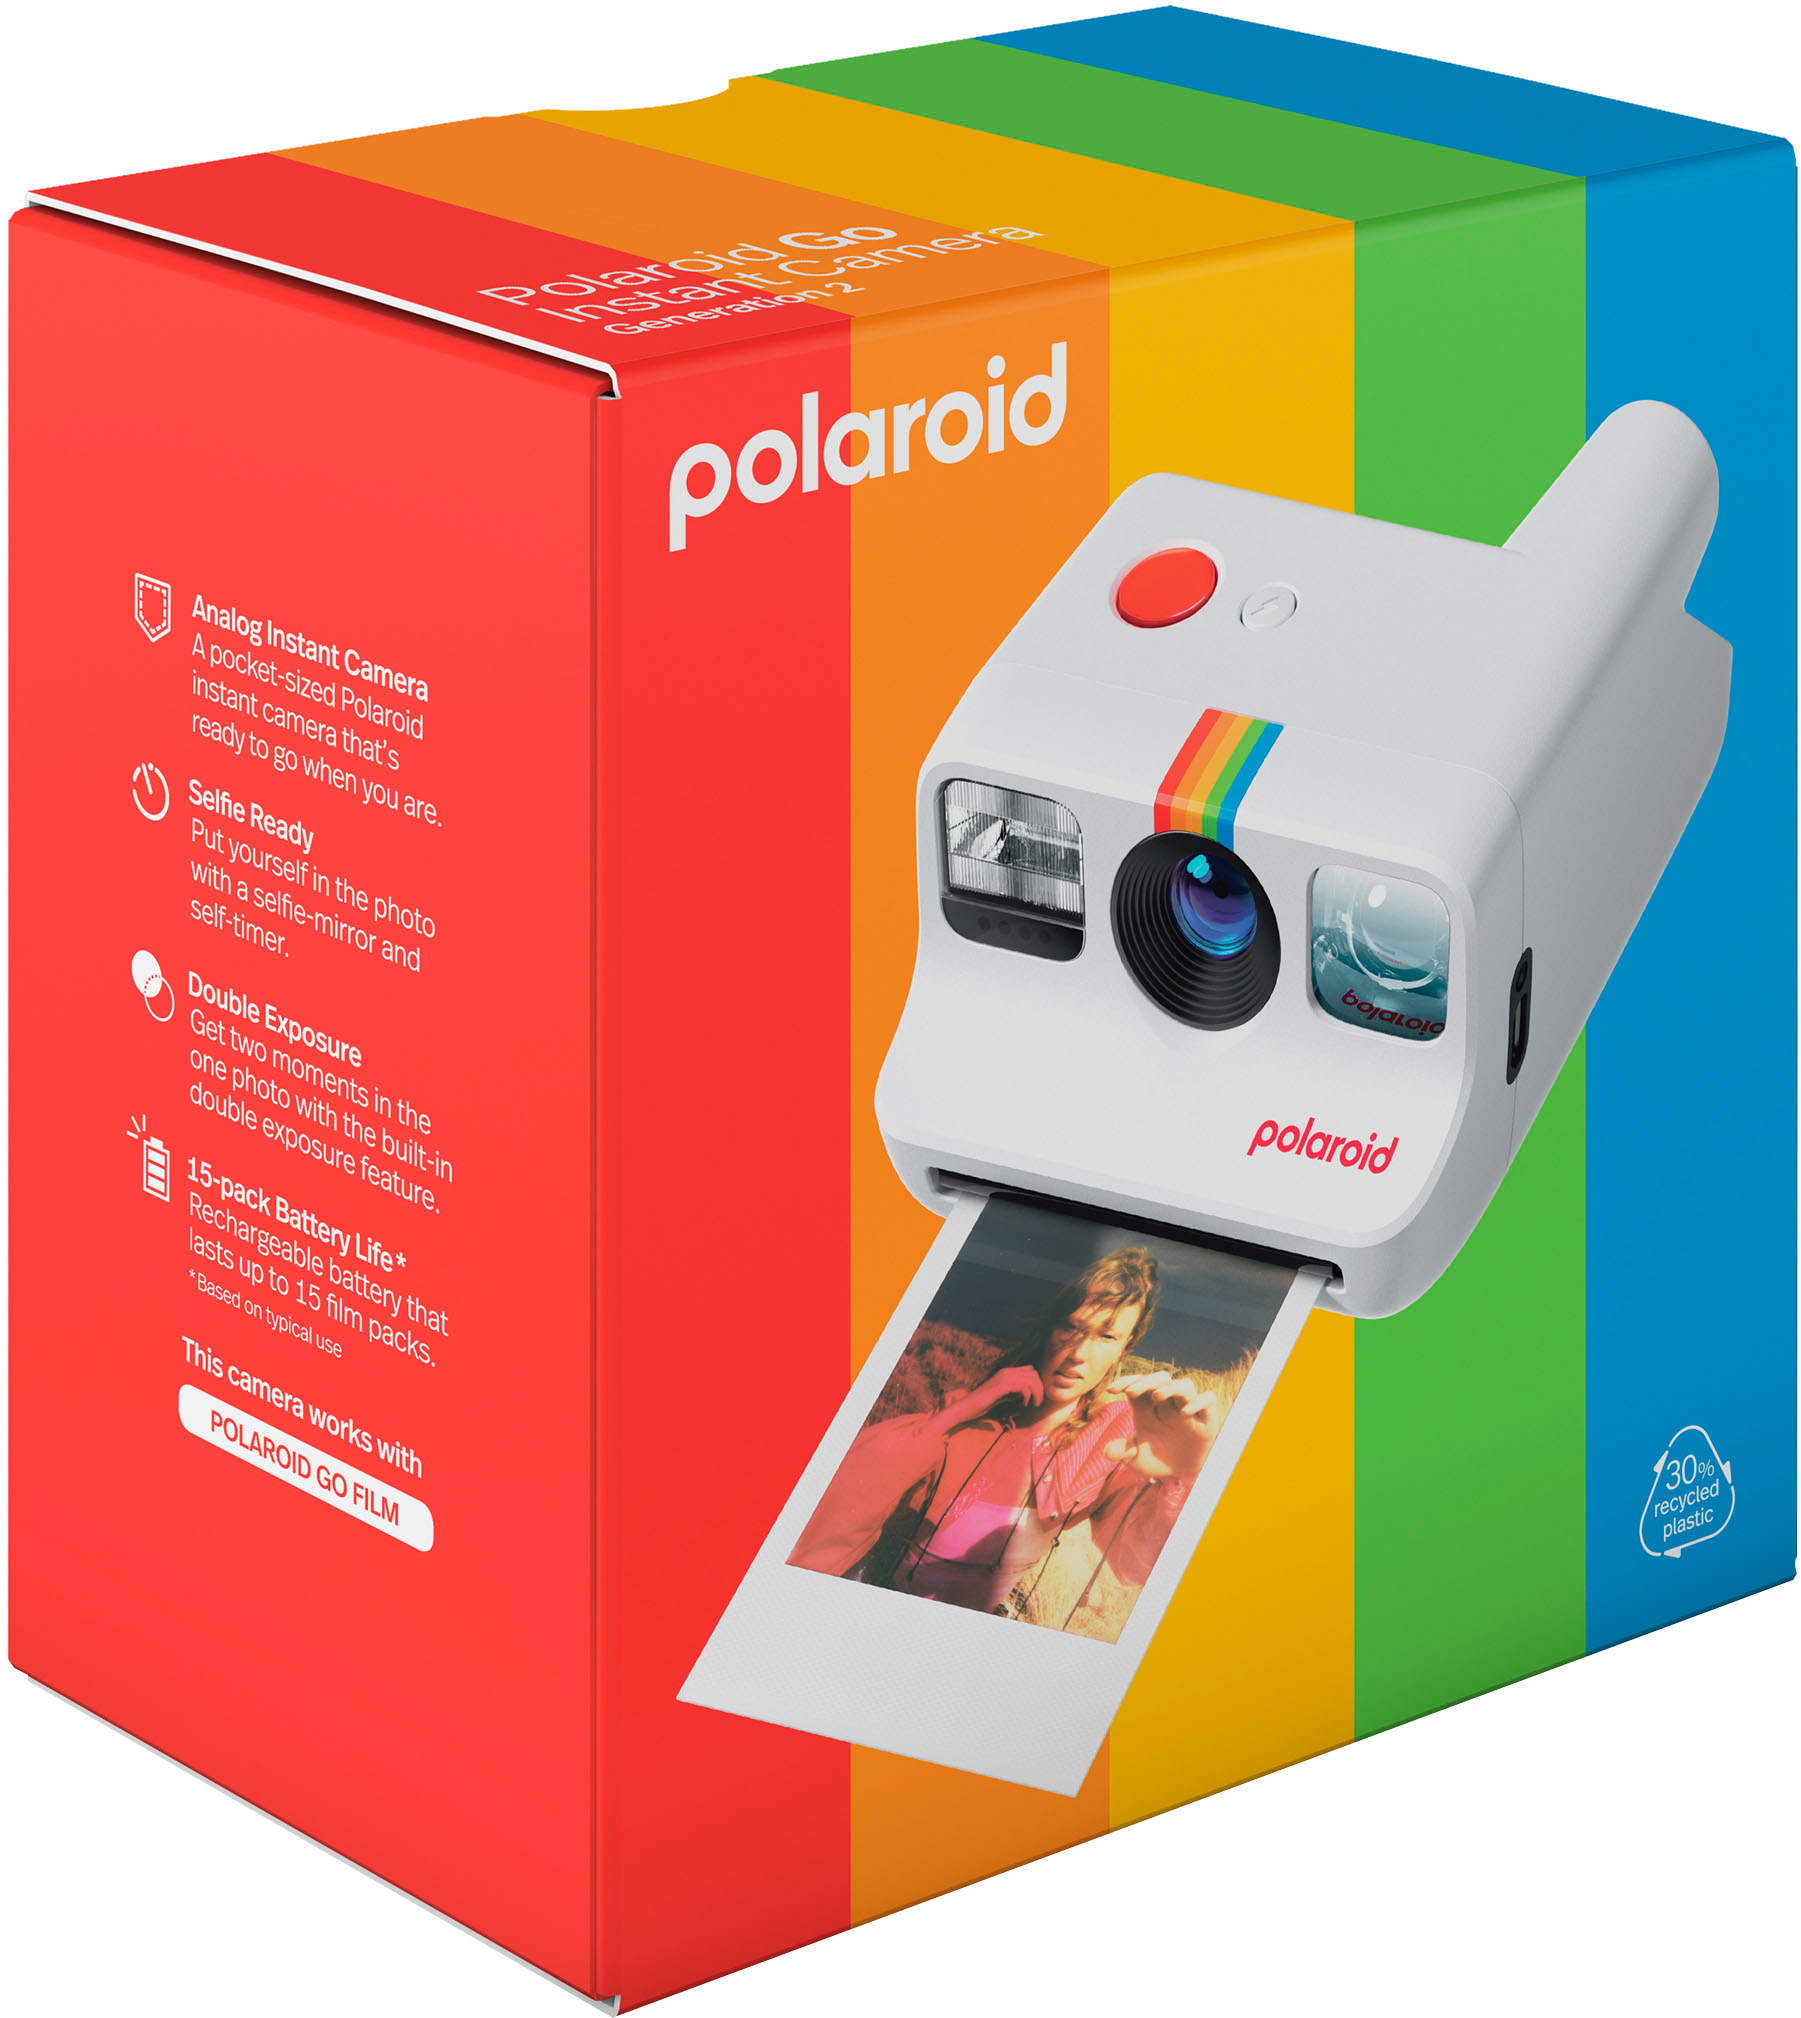 Polaroid Go Gen 2 Everything Box White 6282 - Best Buy